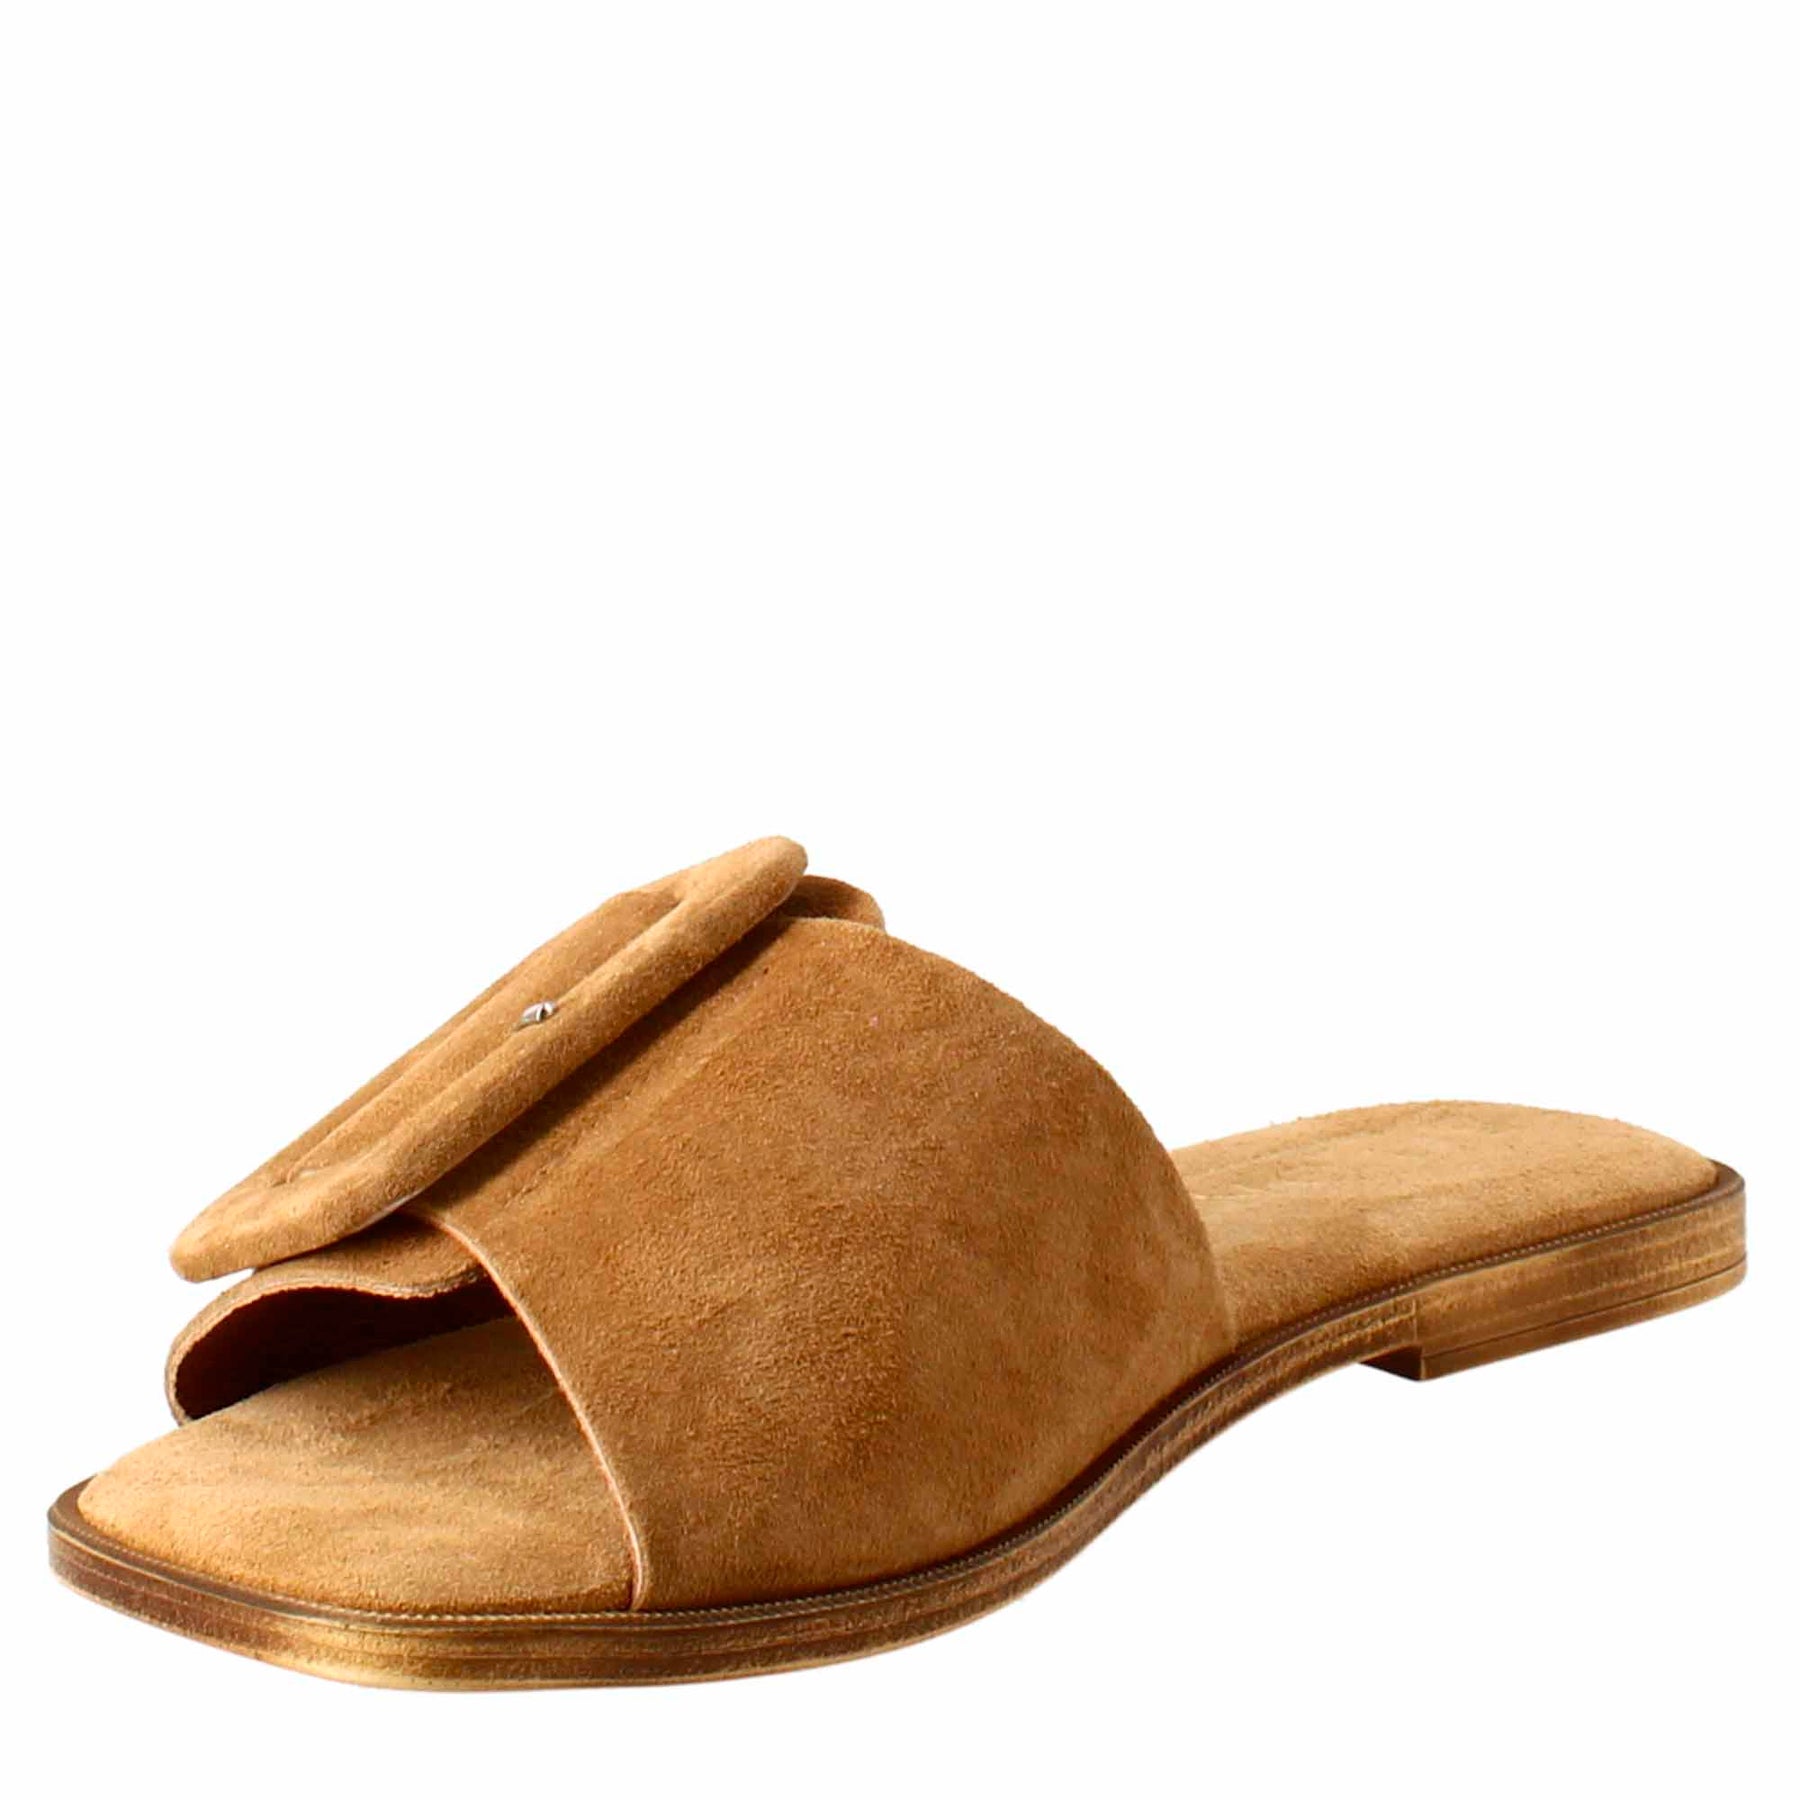 Sandale basse pour femme en daim marron